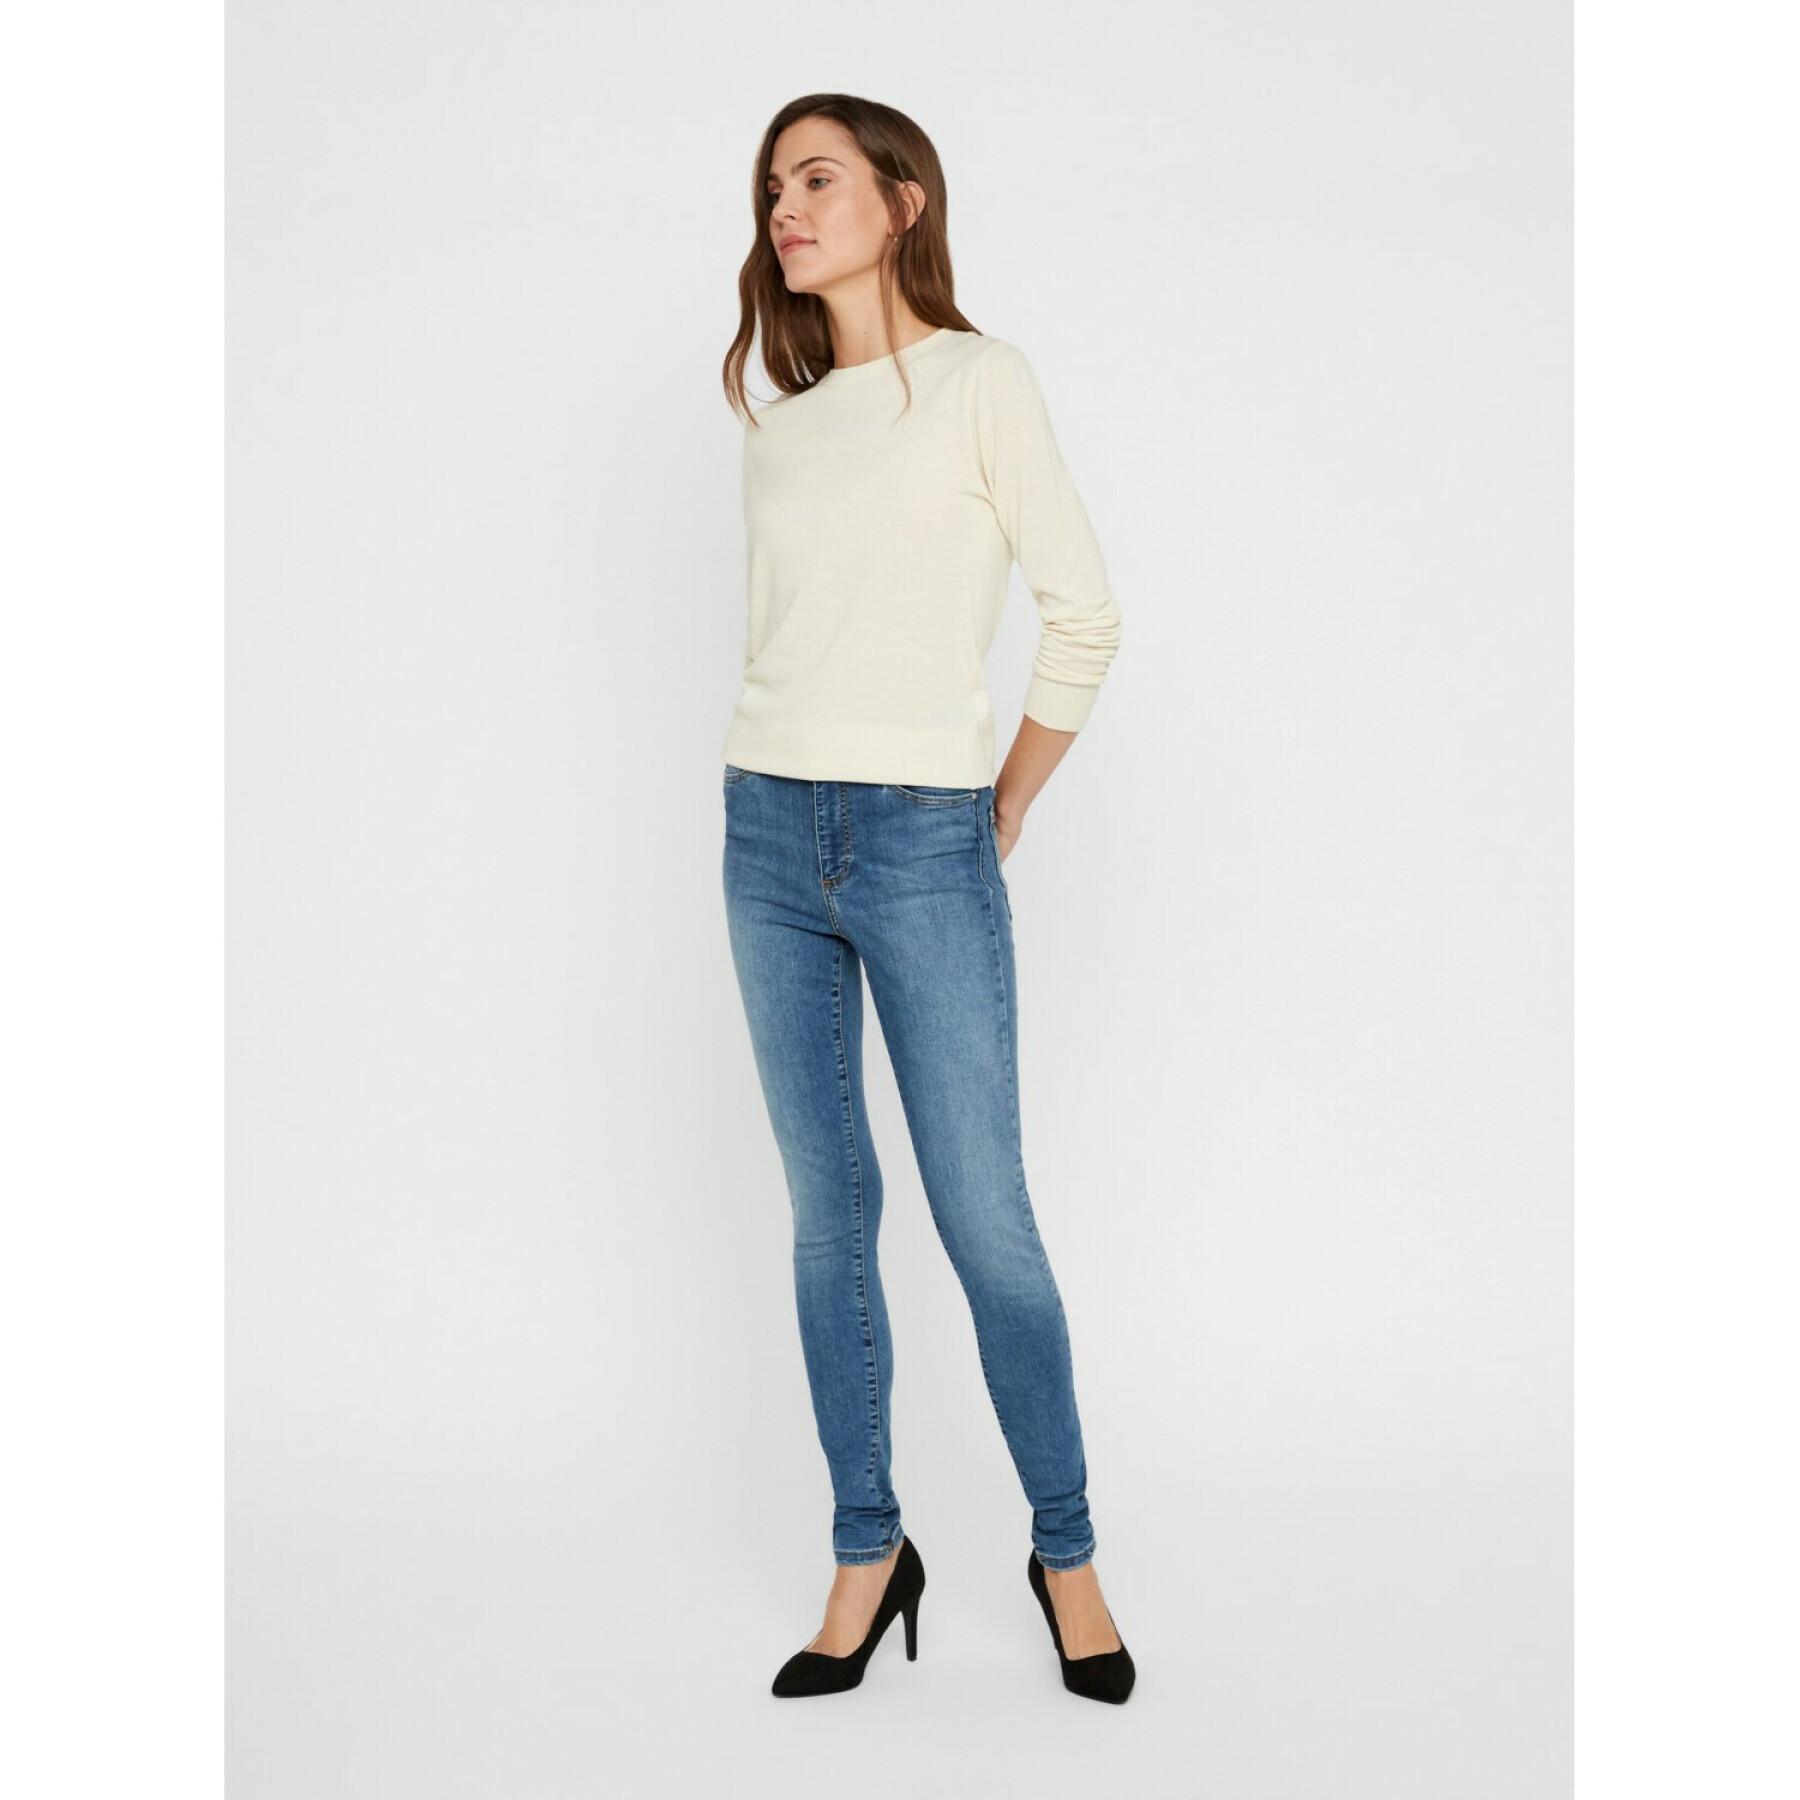 Women's skinny jeans Vero Moda vmsophia